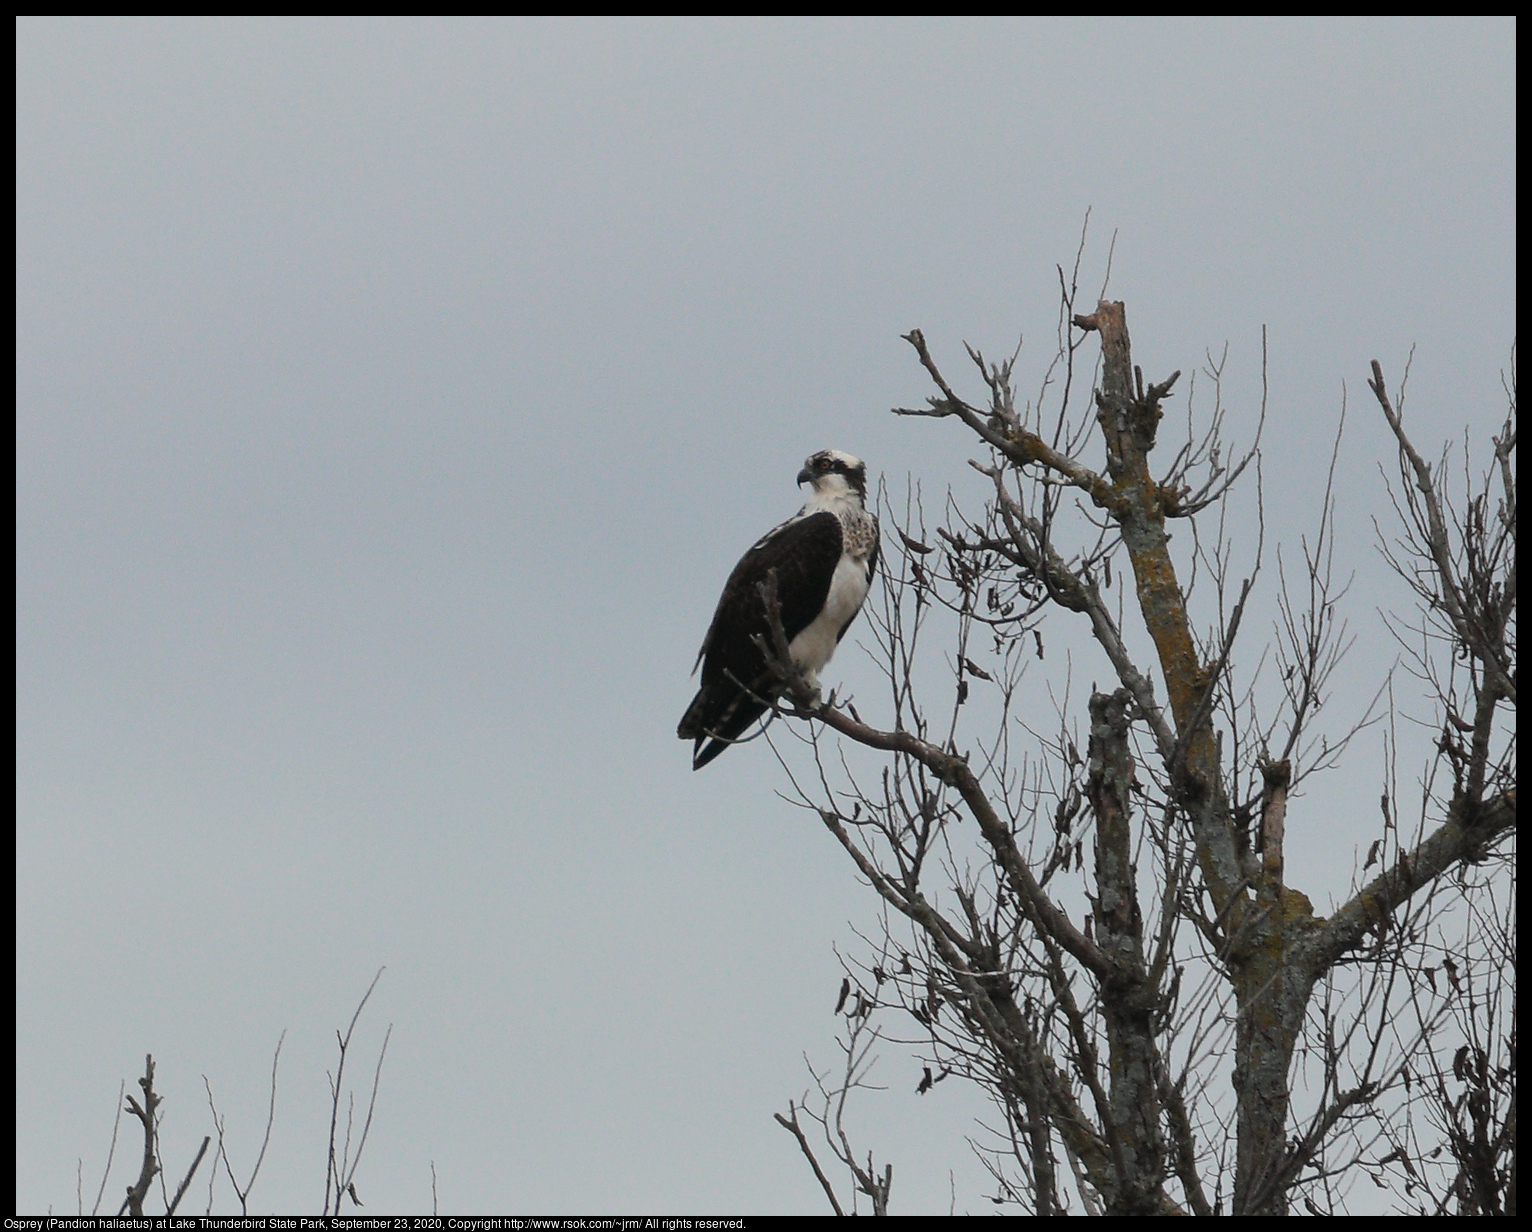 Osprey (Pandion haliaetus) at Lake Thunderbird State Park, September 23, 2020